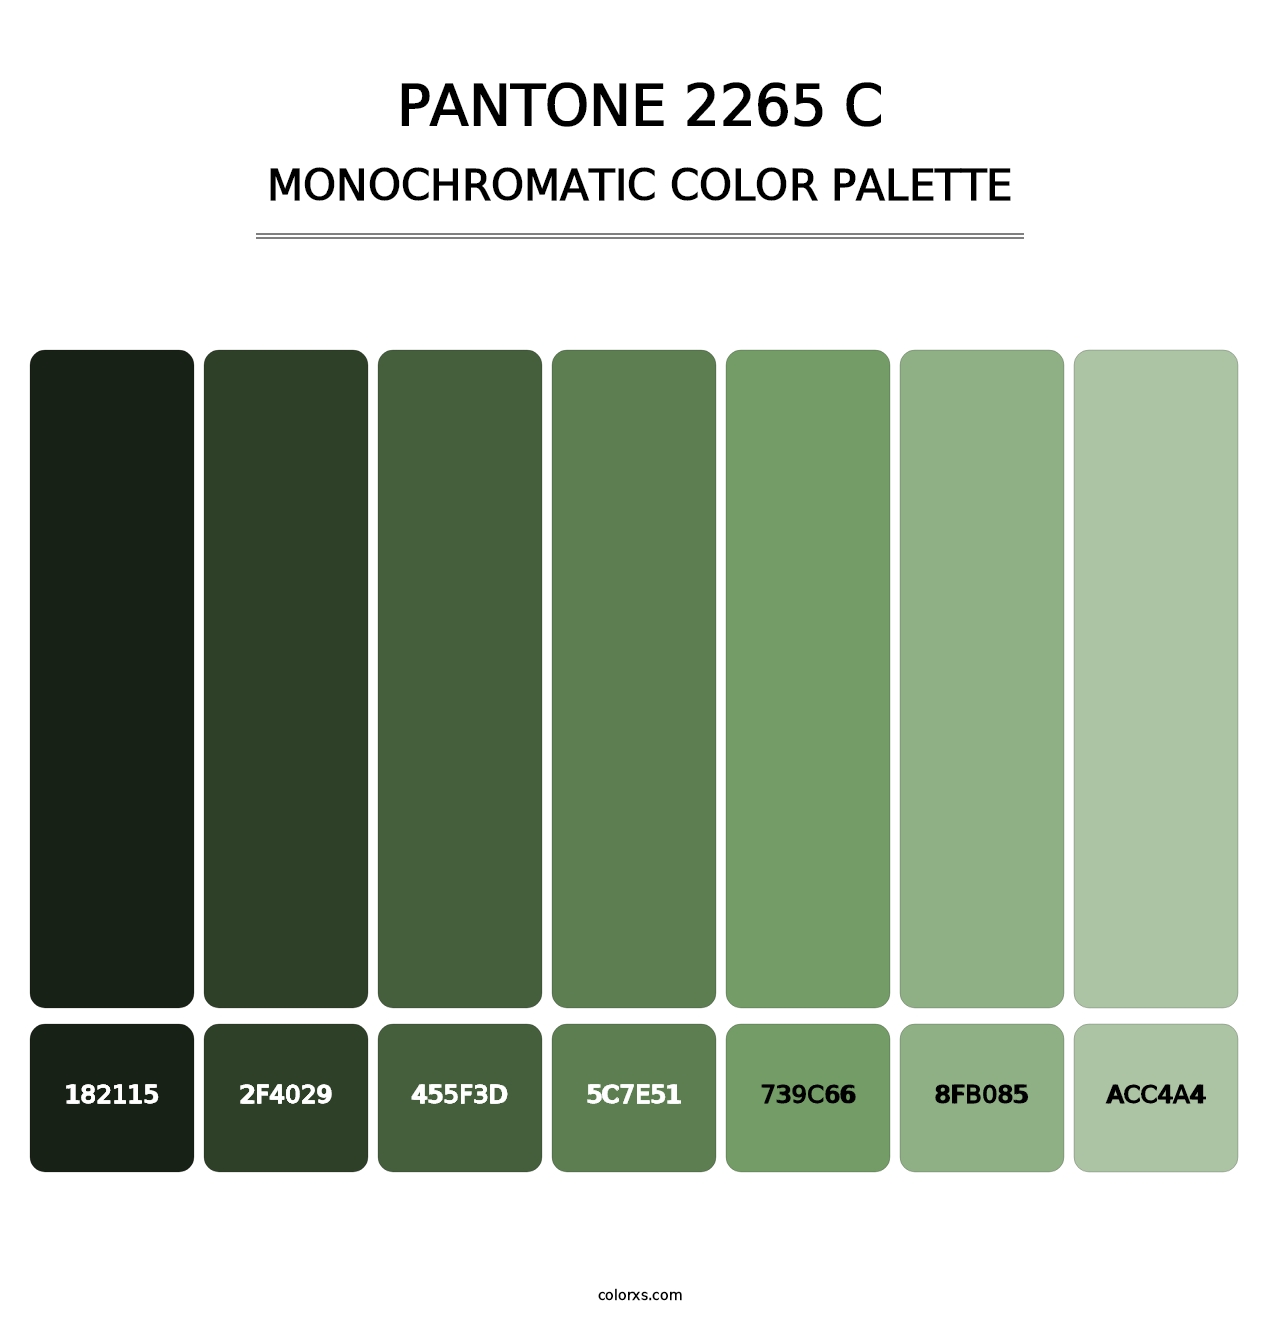 PANTONE 2265 C - Monochromatic Color Palette